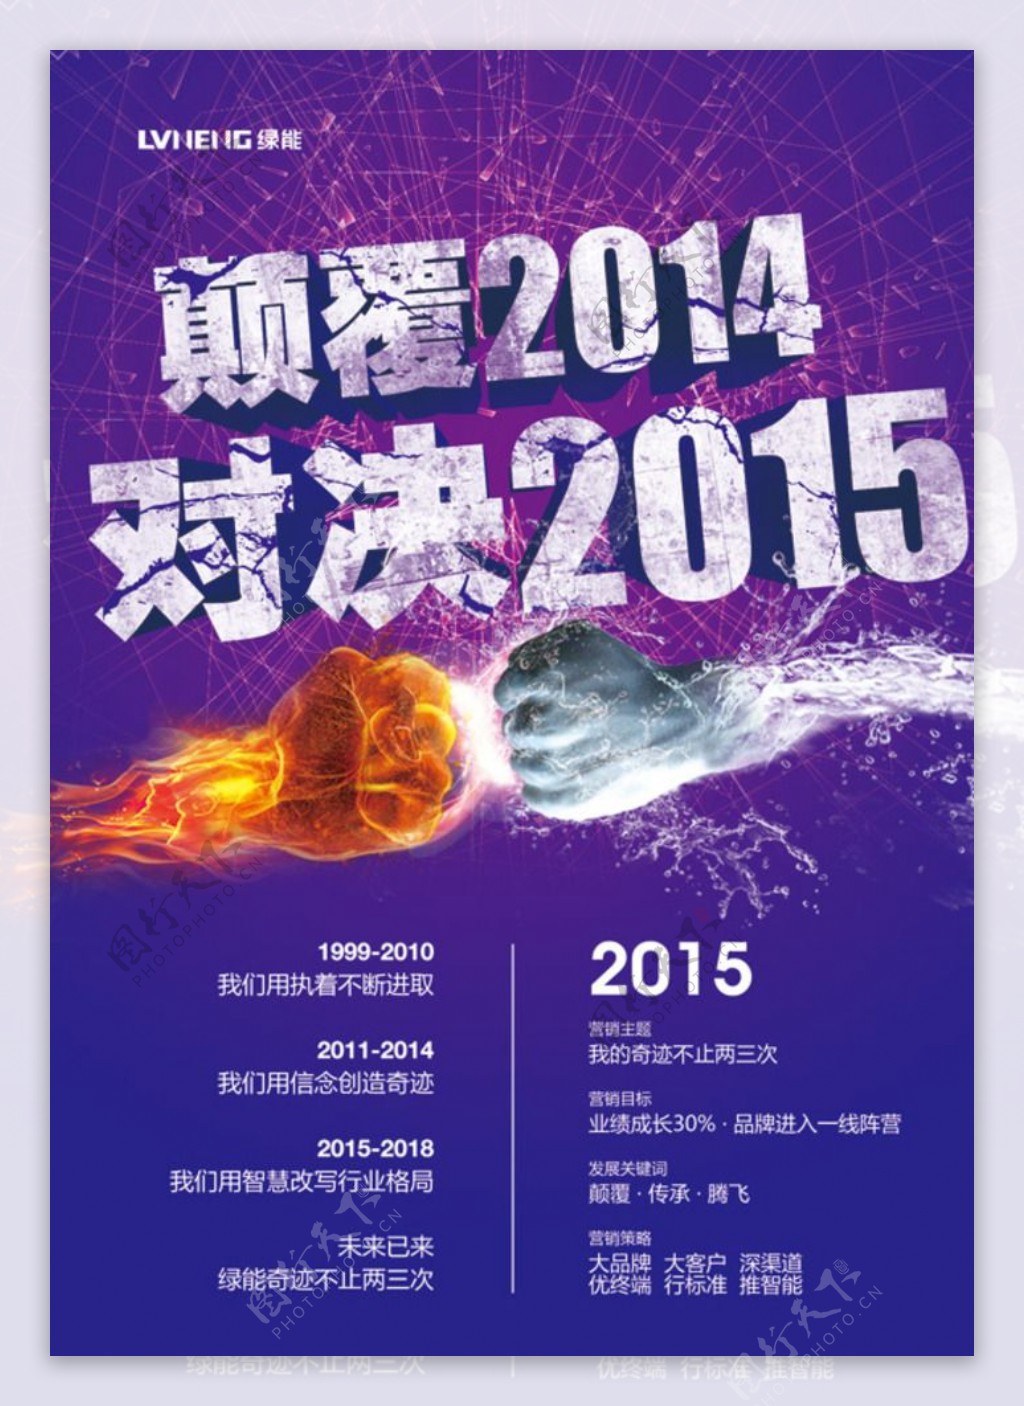 巅峰2014海报图片